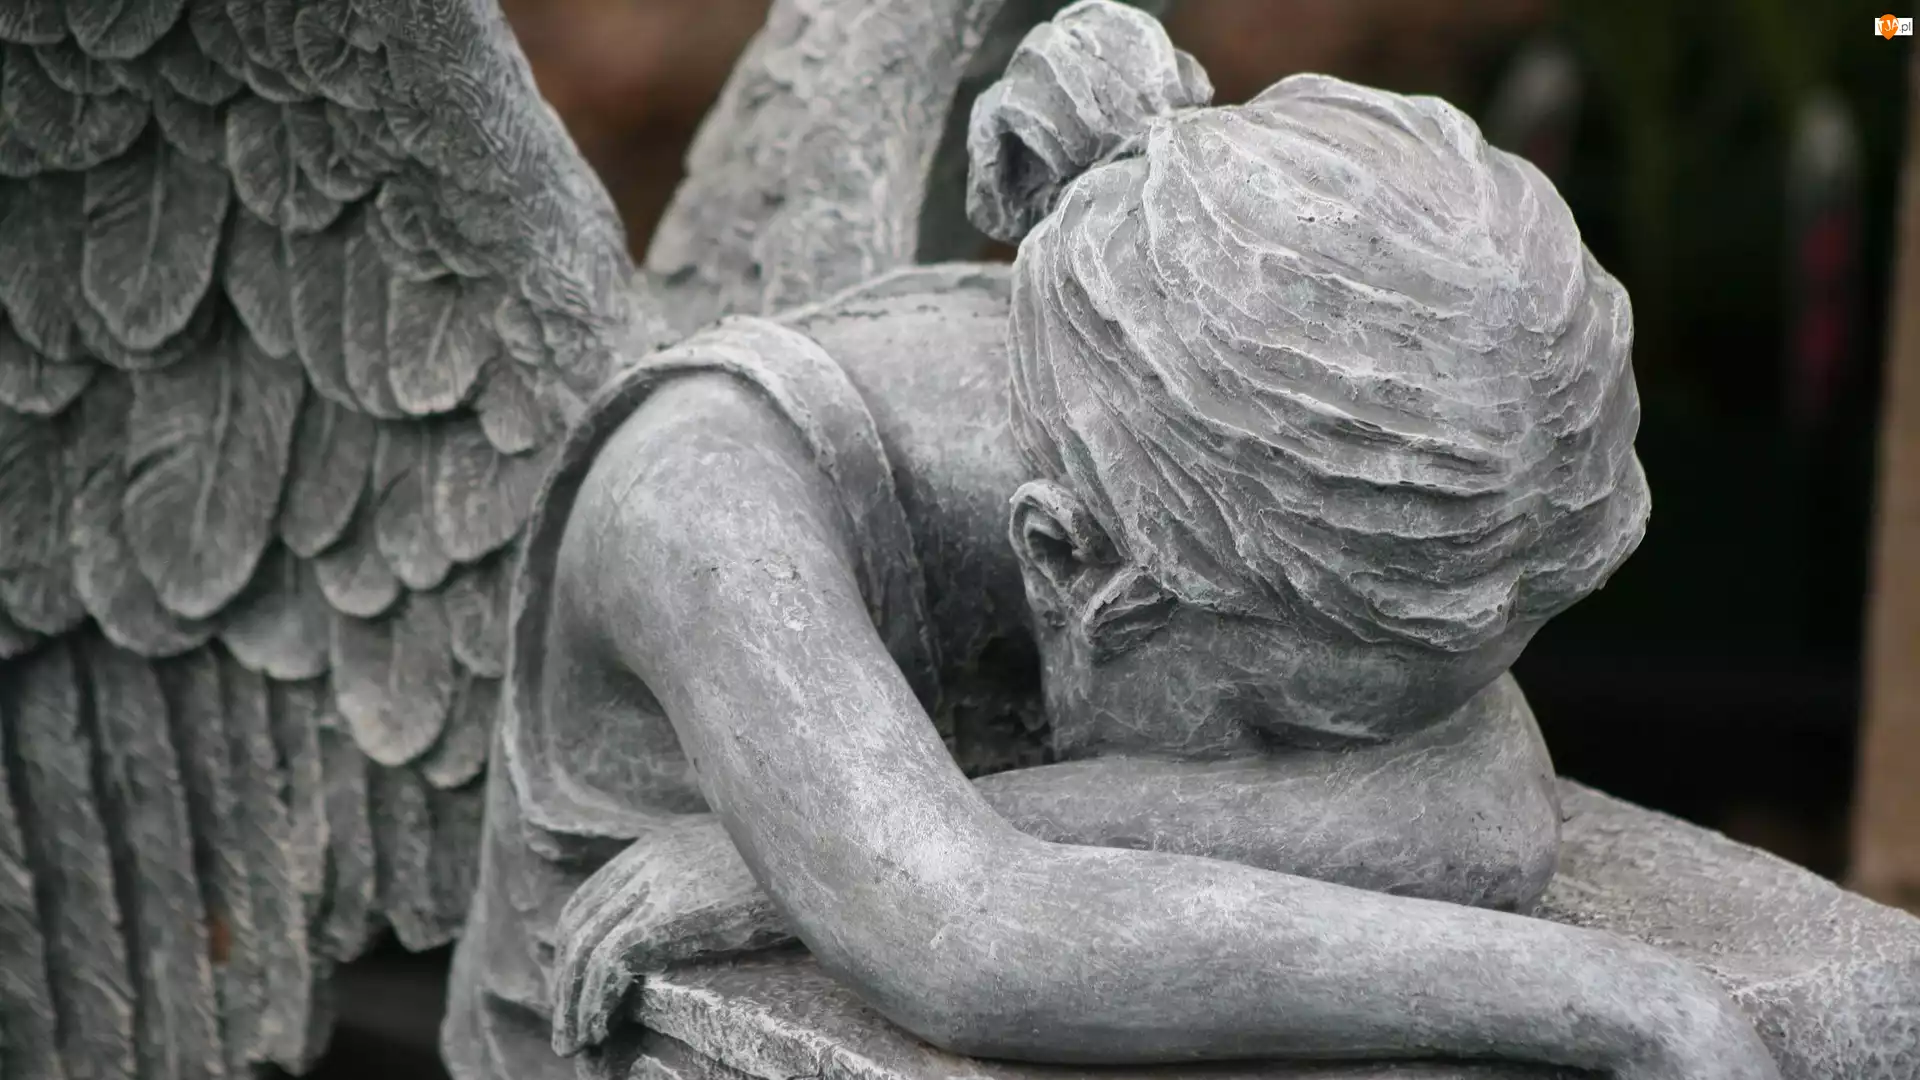 Anioł, Posąg, Płaczący